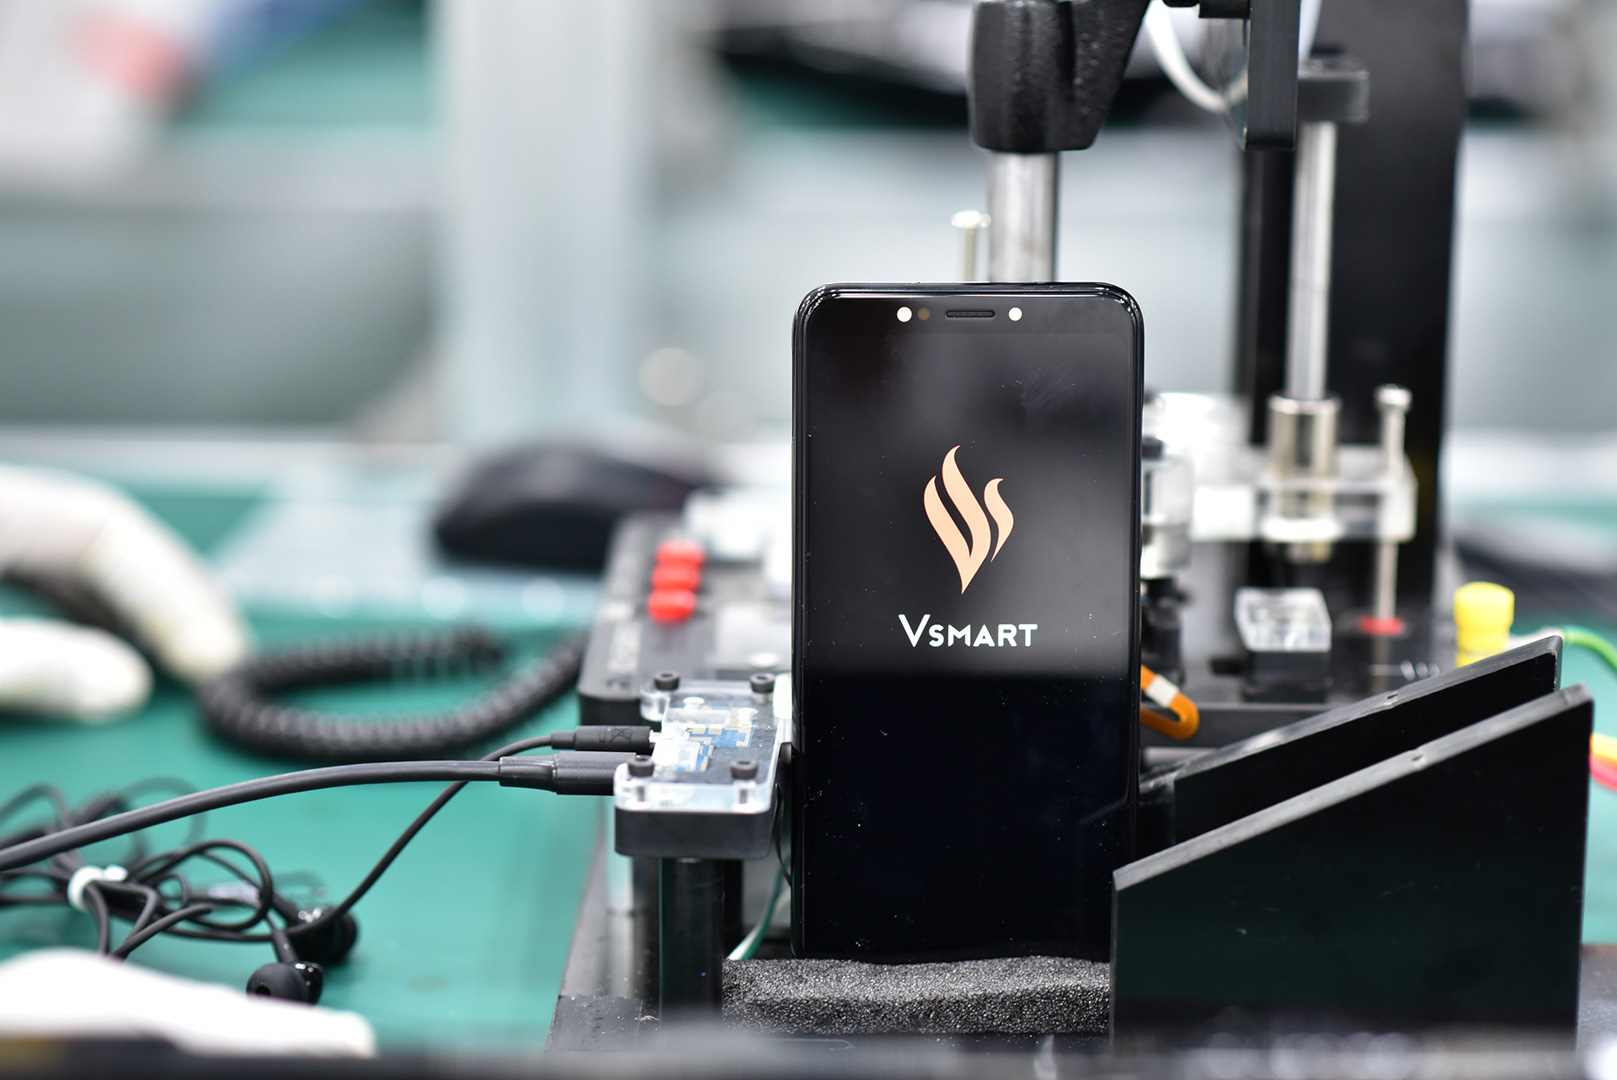 Cận cảnh dàn robort “khủng” tại nơi sản xuất điện thoại Vsmart